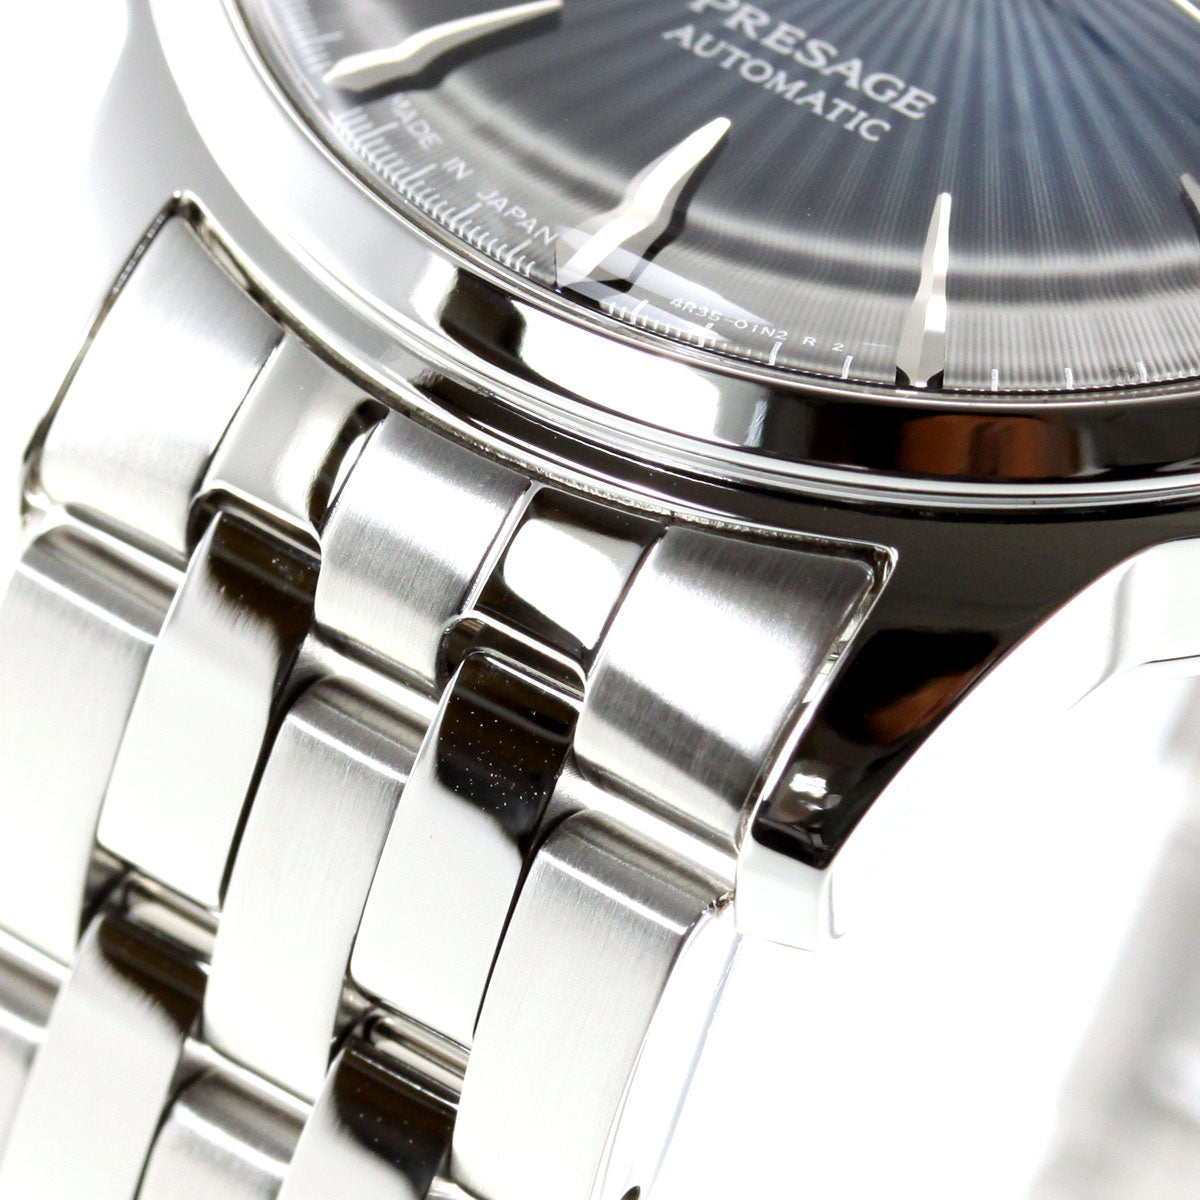 セイコー SEIKO 腕時計 メンズ SARY123 セイコー メカニカル プレザージュ ベーシックライン カクテルタイム ブルームーン Cocktail Blue Moon 自動巻き（4R35/手巻き付） ネイビーxシルバー アナログ表示